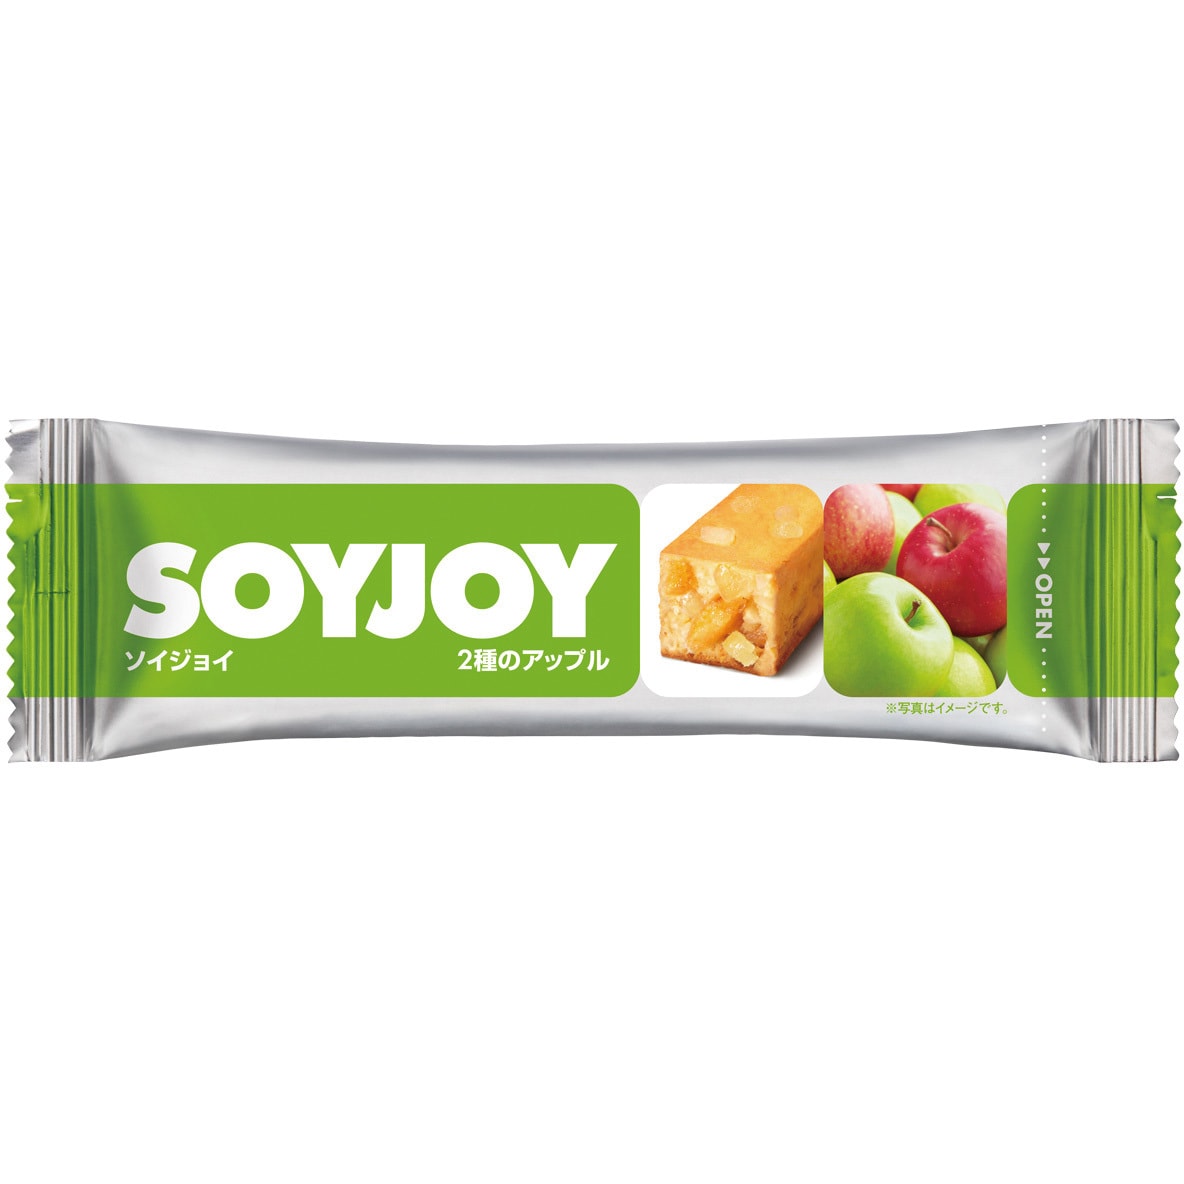 SOYJOY - 菓子